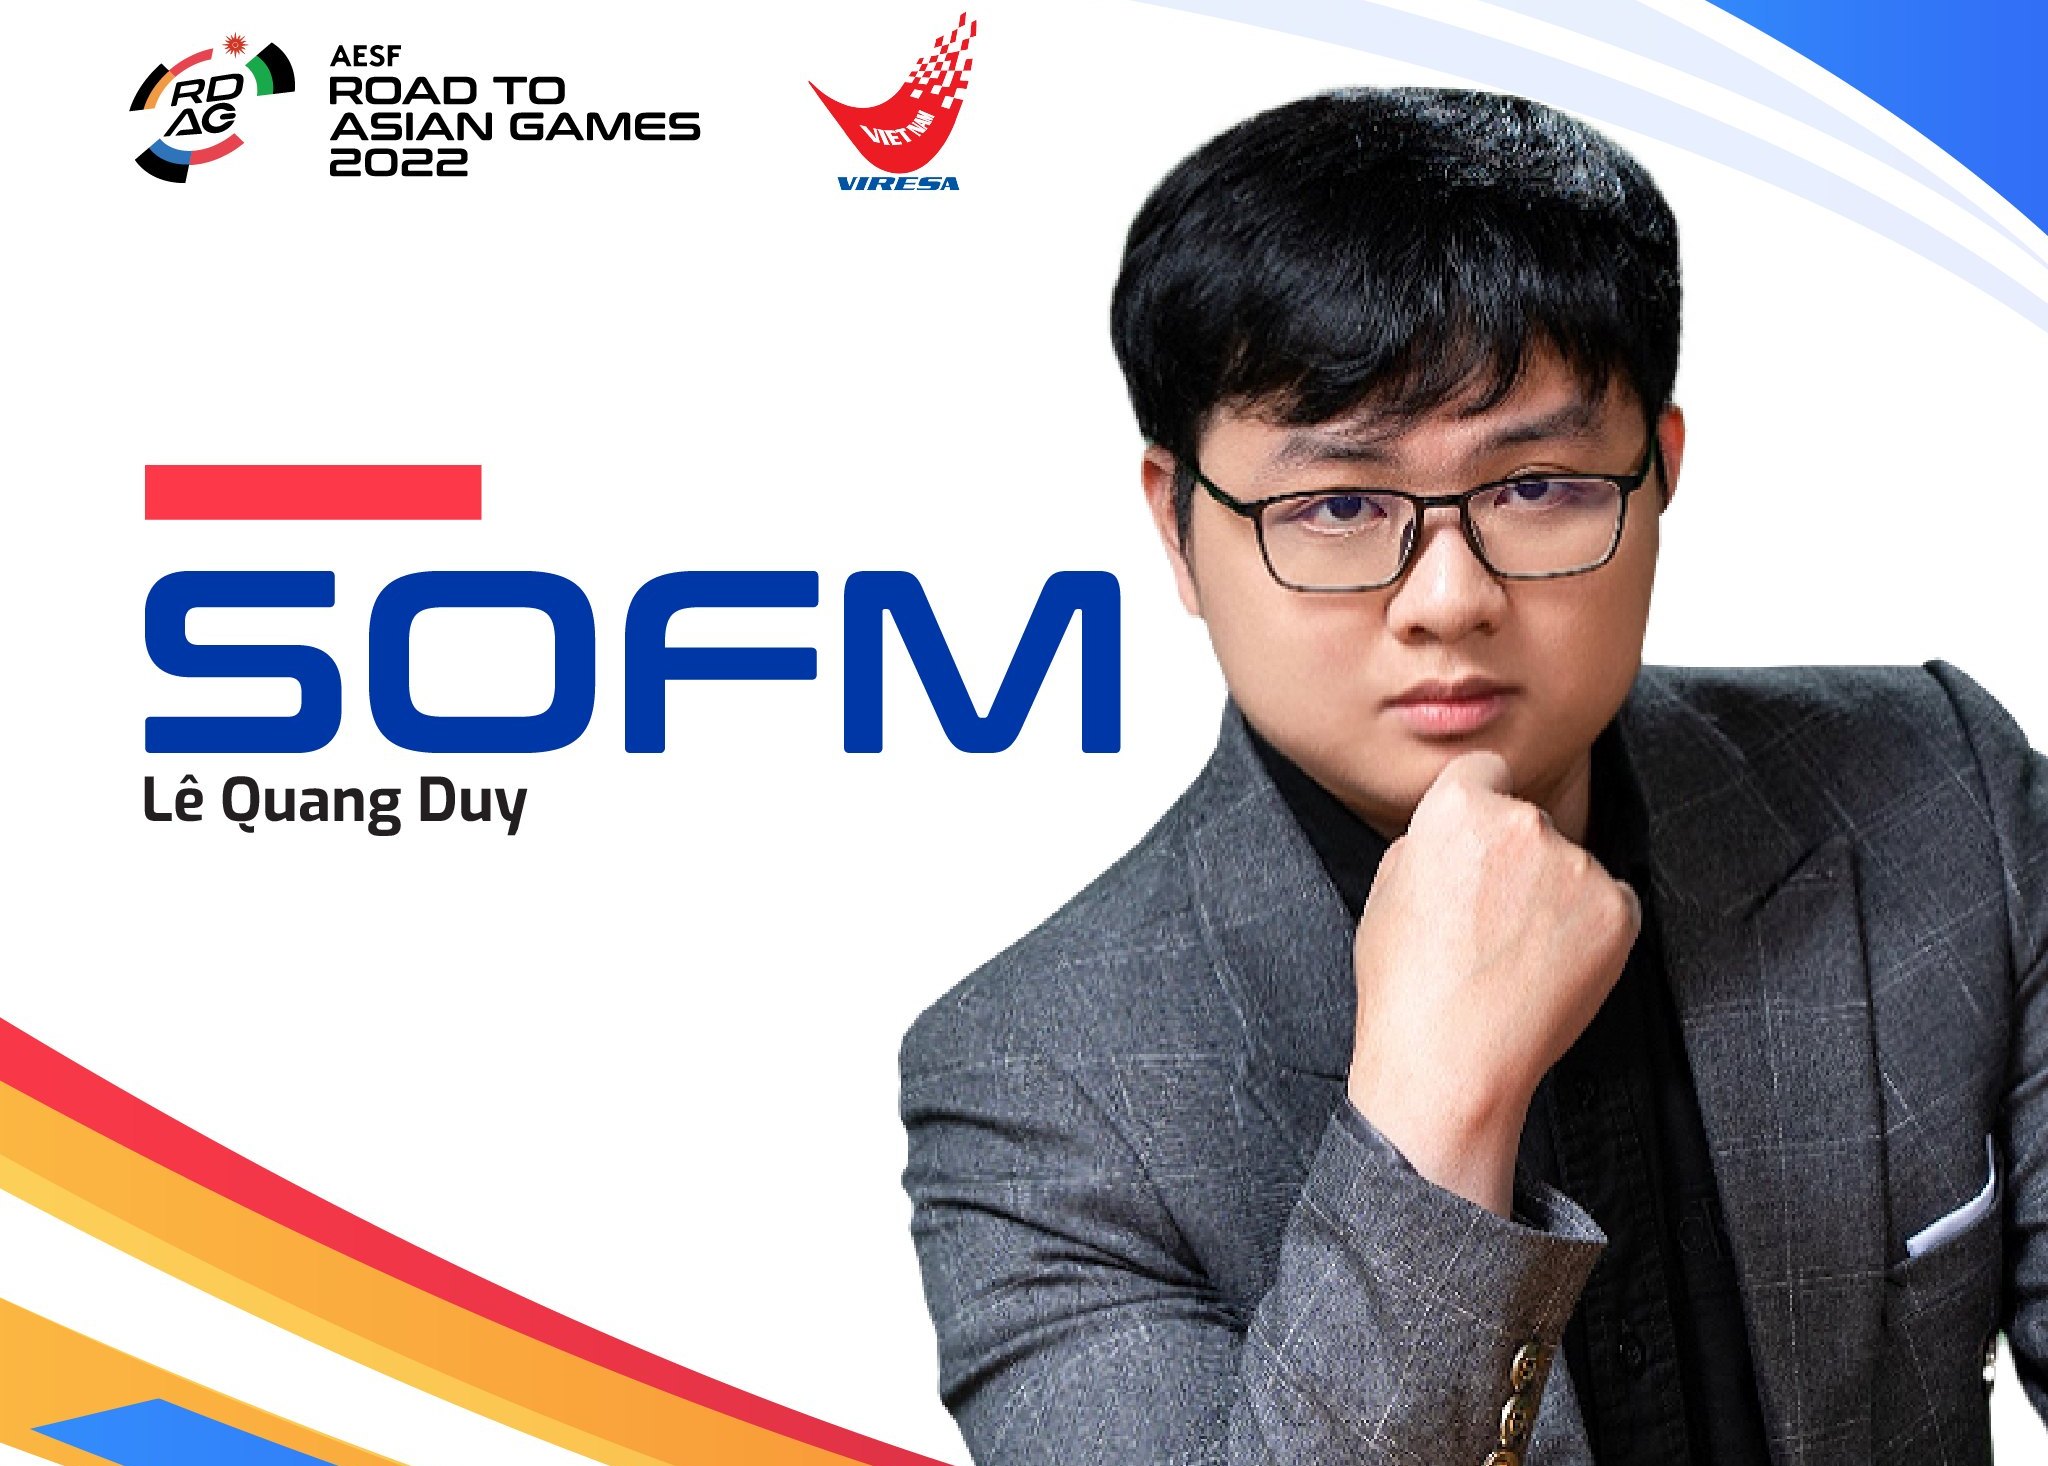 SofM trở thành huấn luyện viên trưởng số 1 của Đội tuyển Thể thao điện tử quốc gia Việt Nam